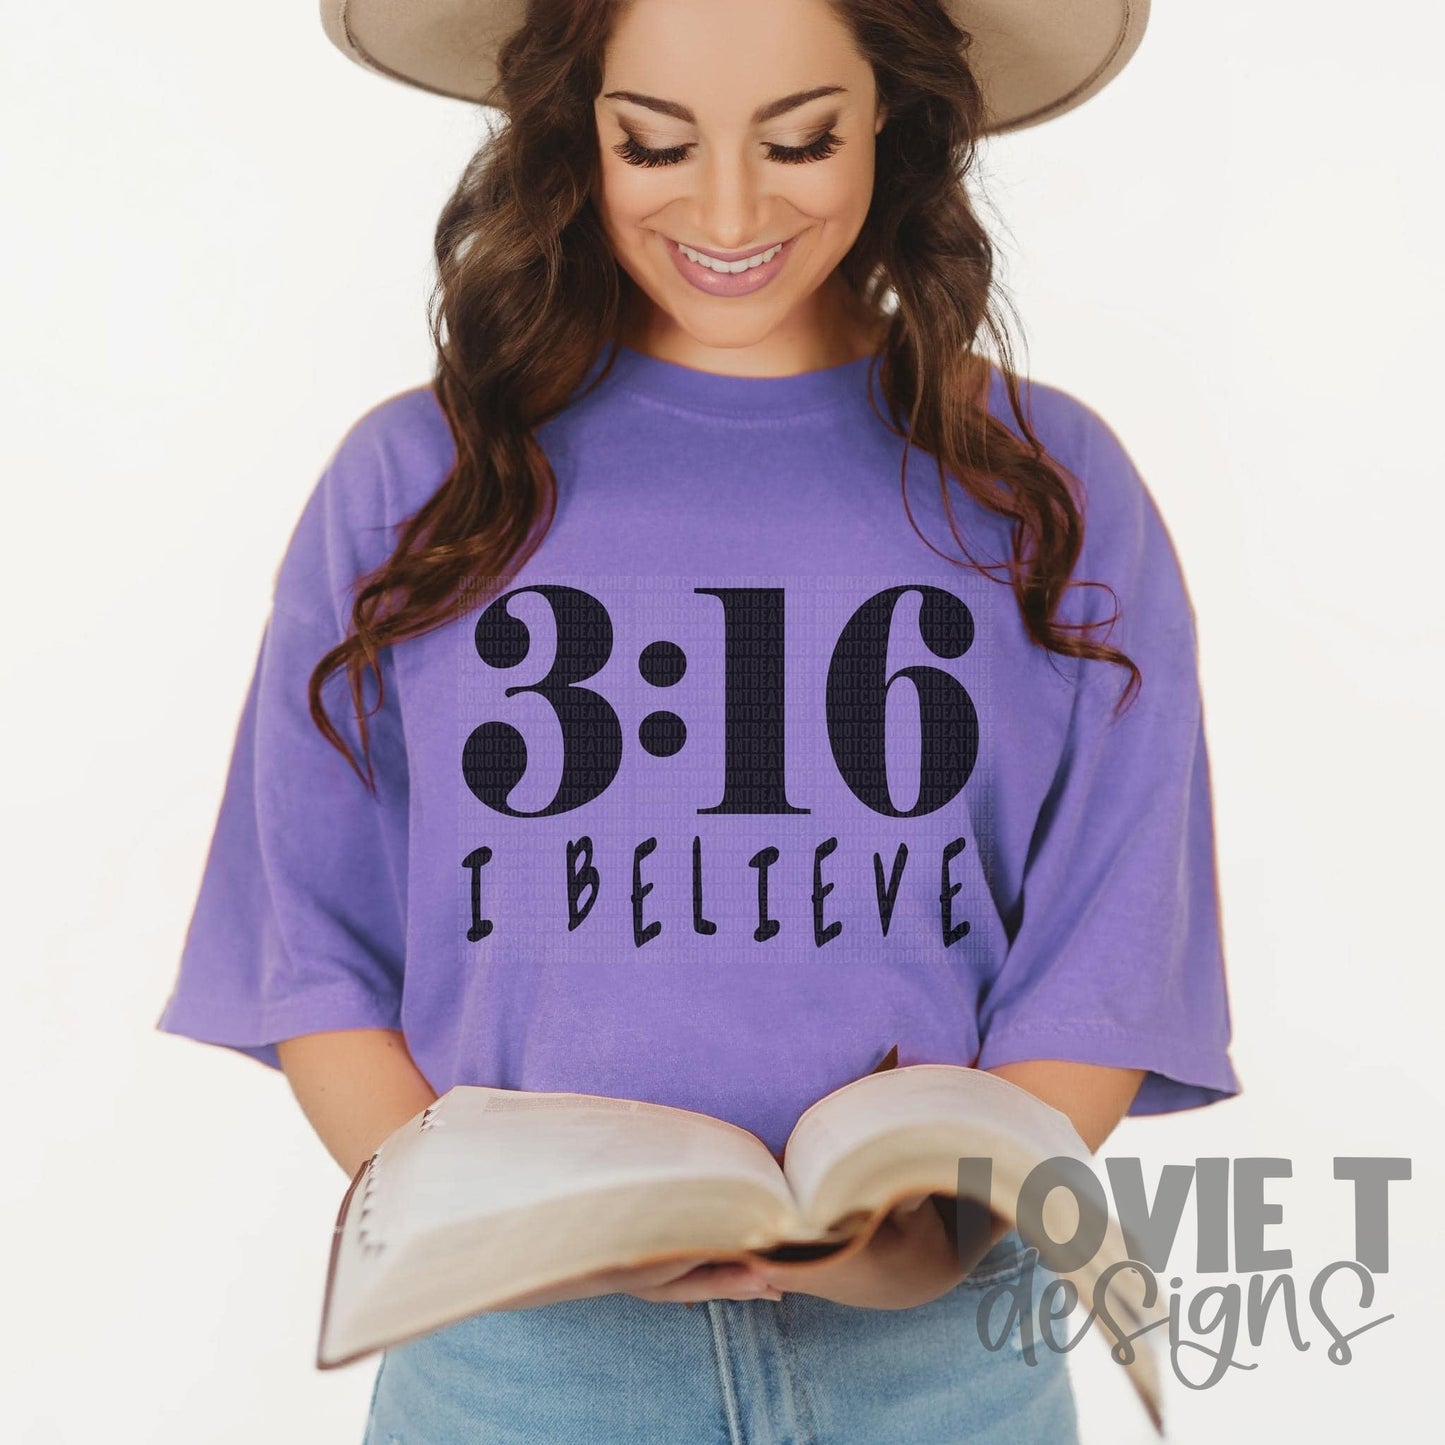 3:16 I Believe